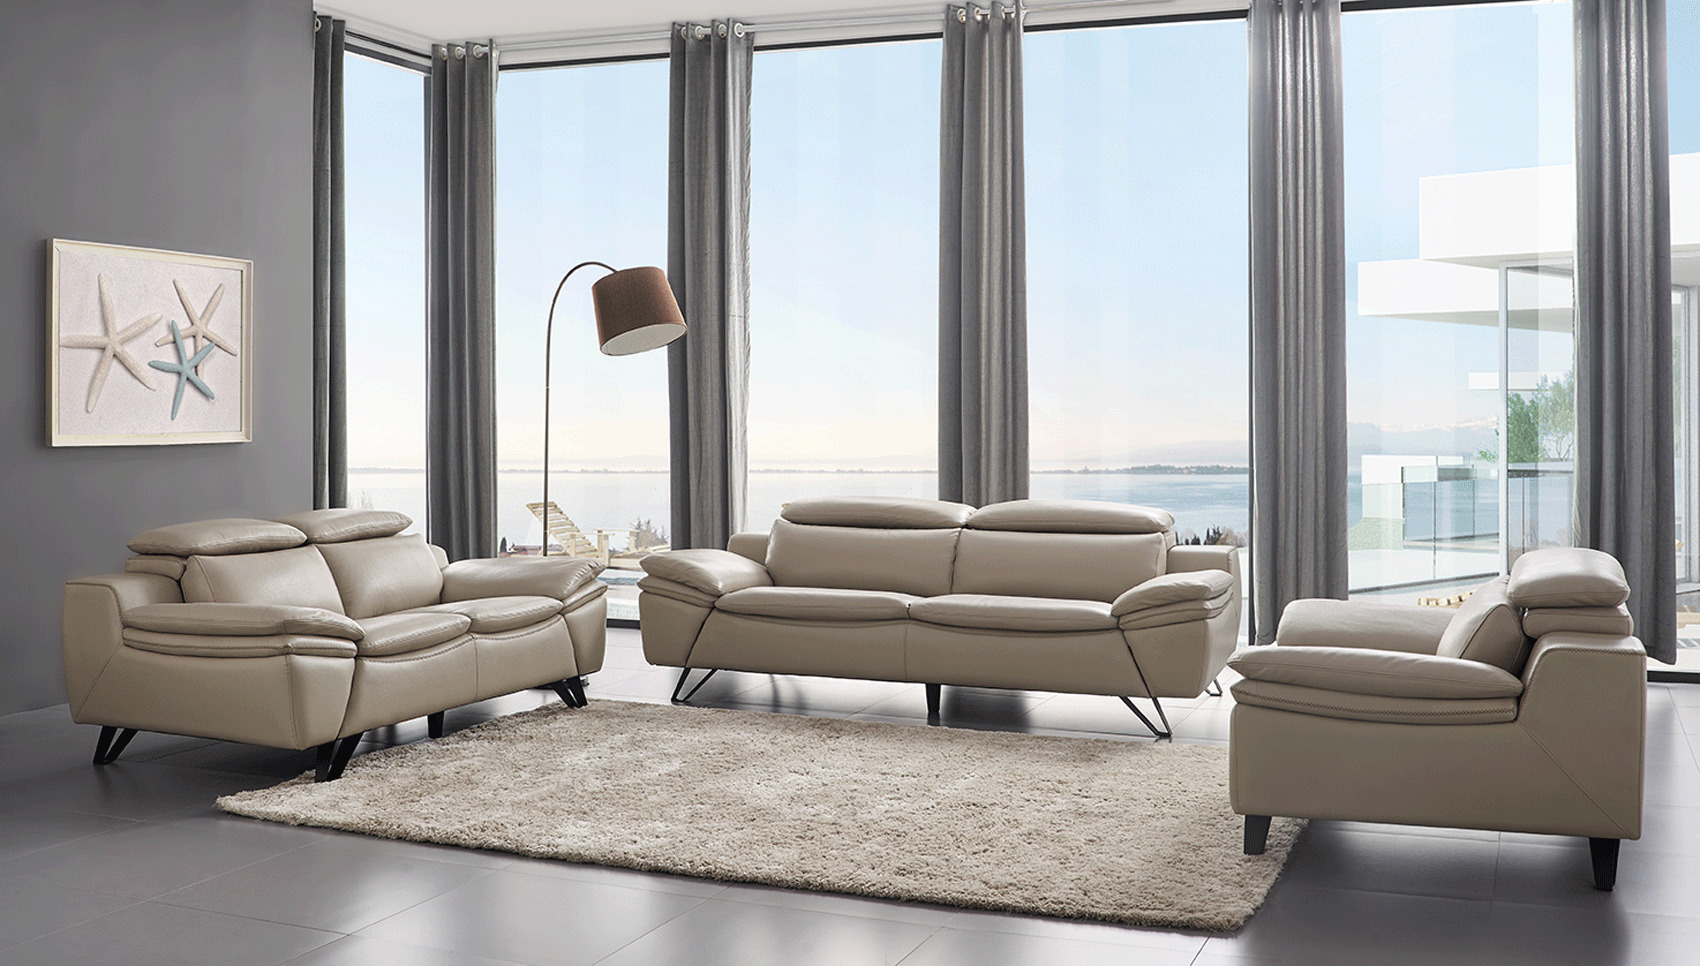 modern leather living room set